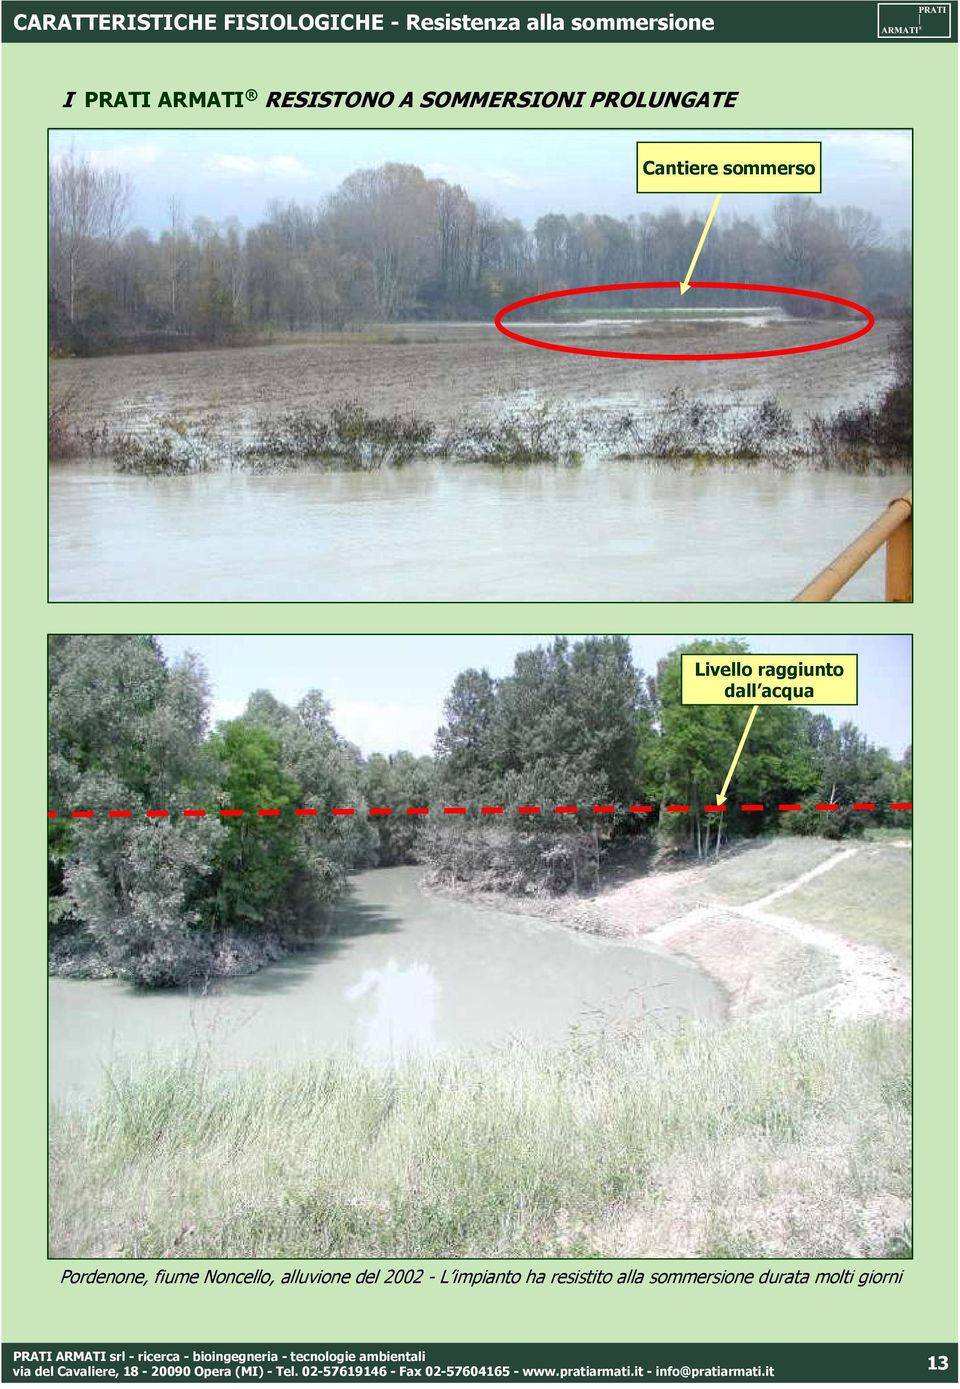 Pordenone, fiume Noncello, alluvione del 2002 - L impianto ha resistito alla